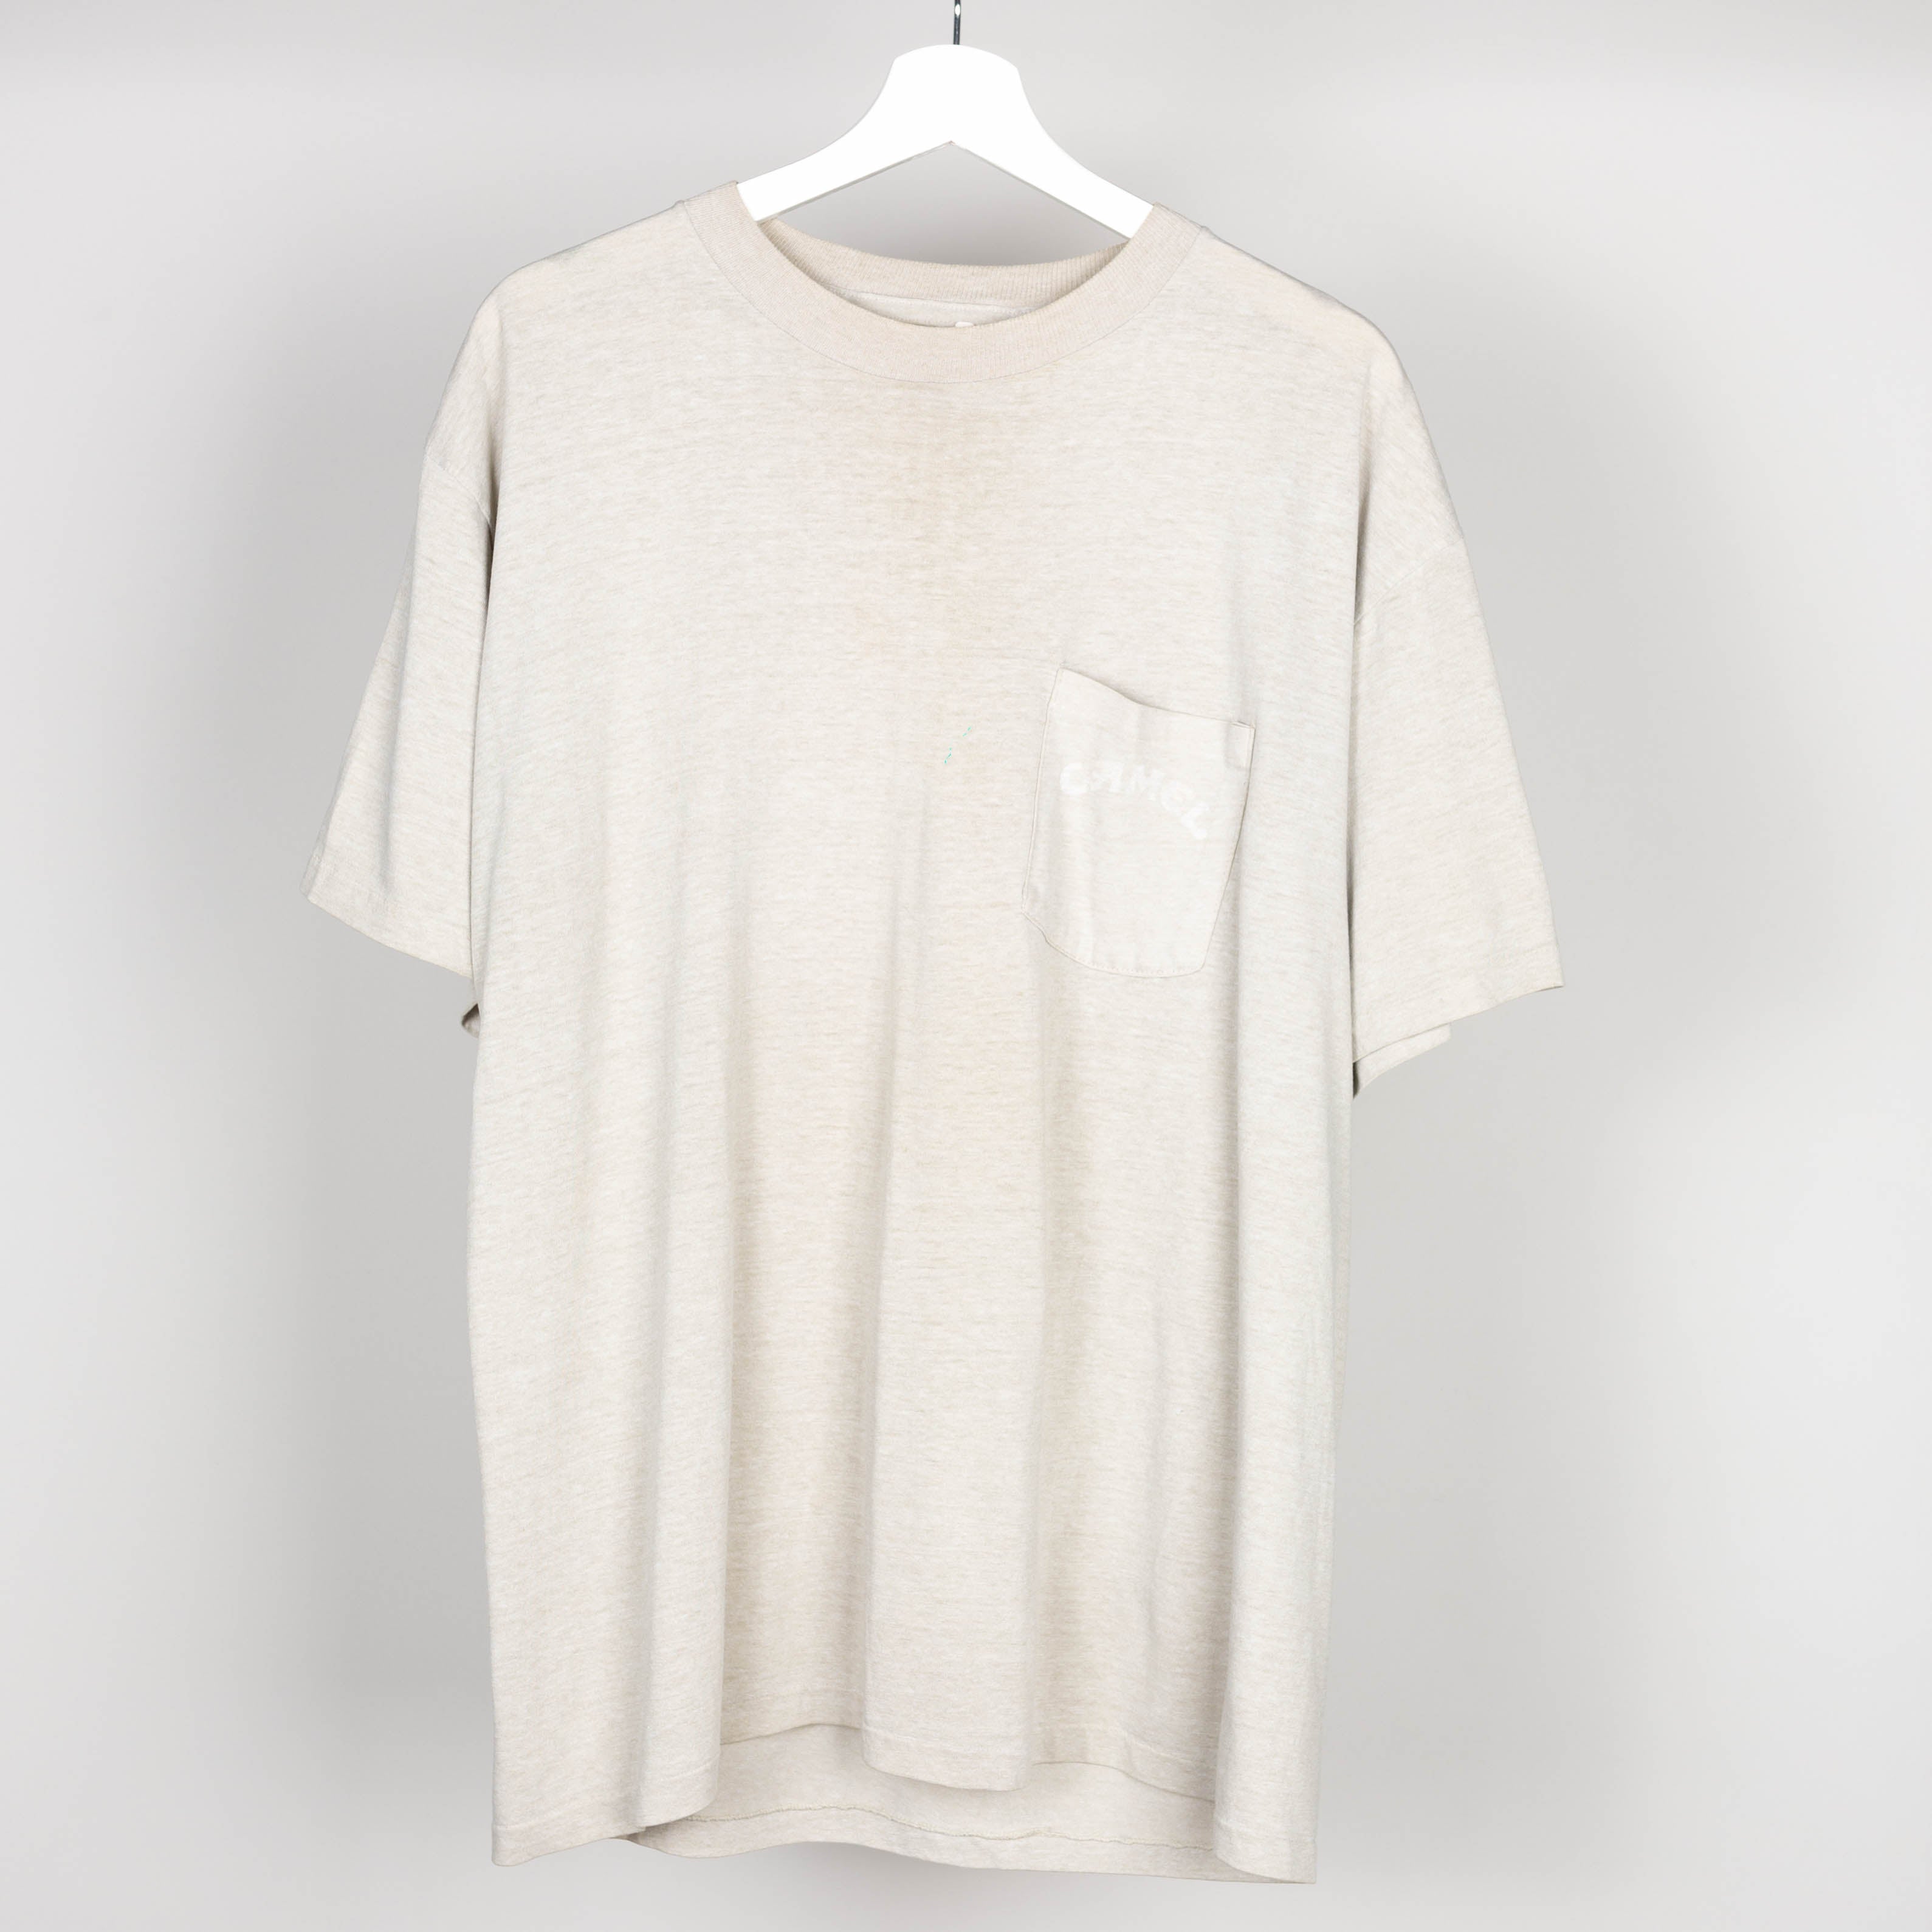 90's Camel T-Shirt Size XL